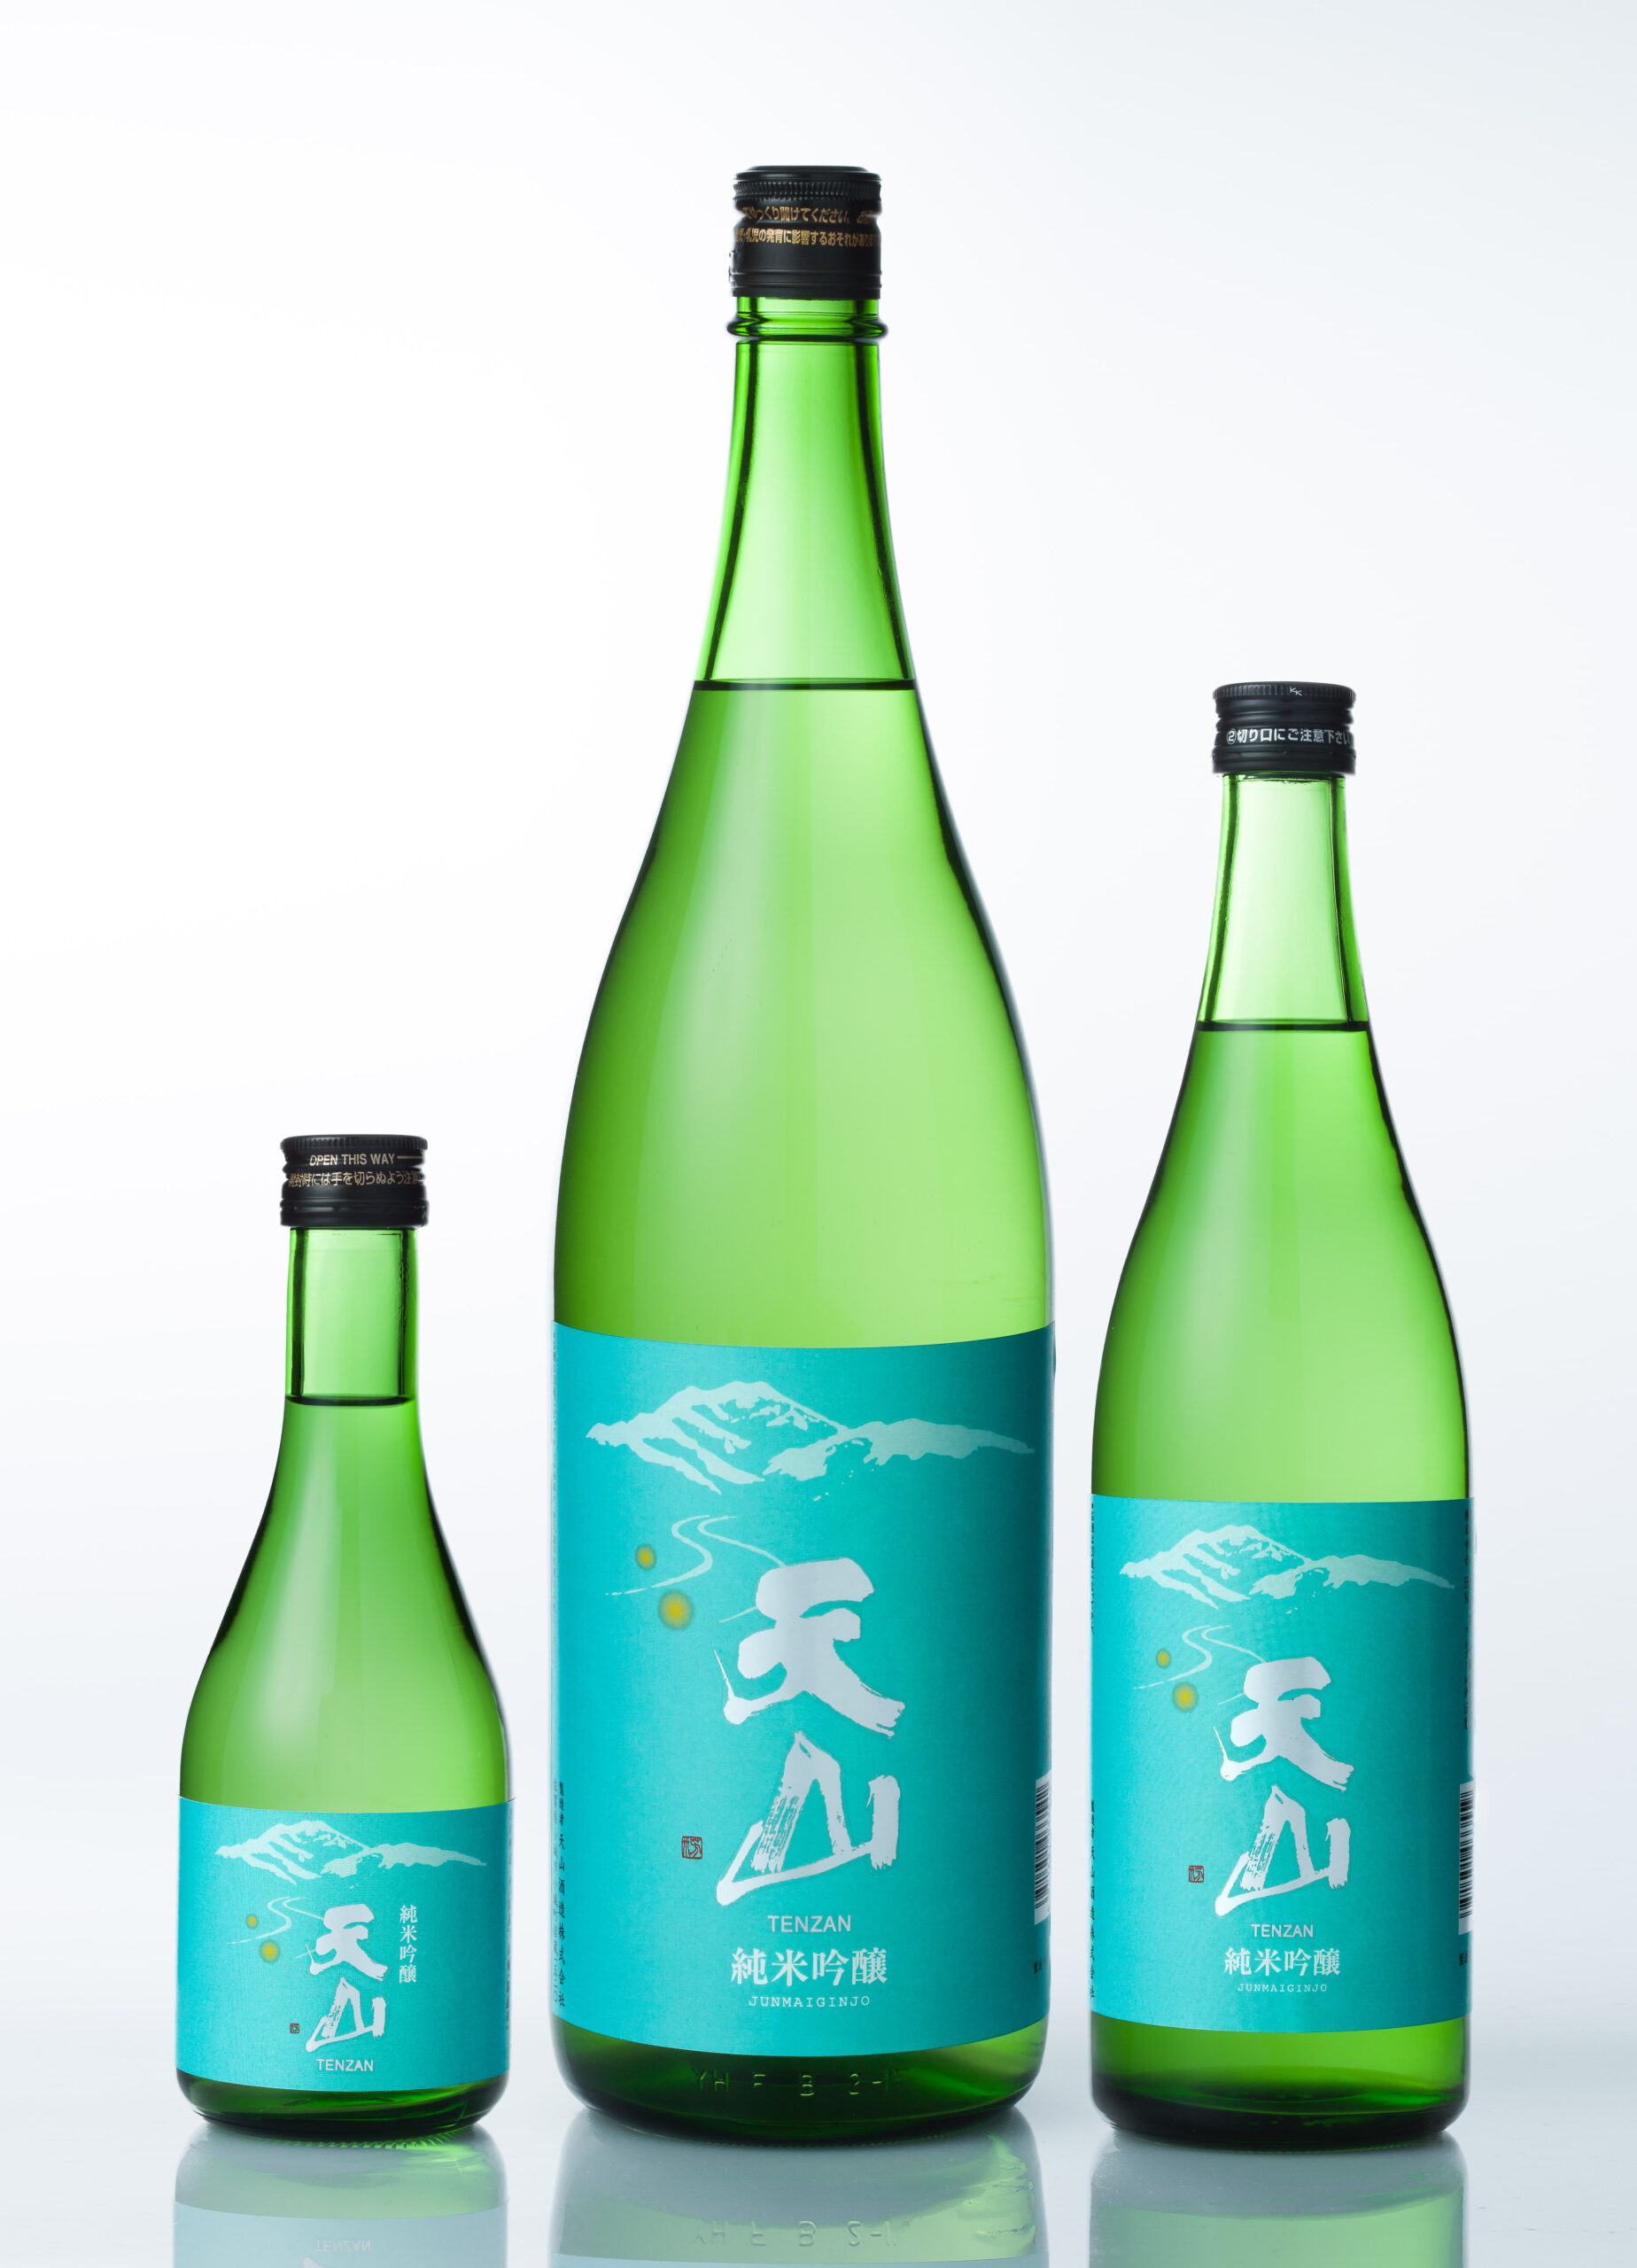 フランス人によるフランス人のための日本酒コンクール「Kura Master 2021」にて、佐賀県の日本酒『天山 純米吟醸』が2年連続金賞受賞致しました。